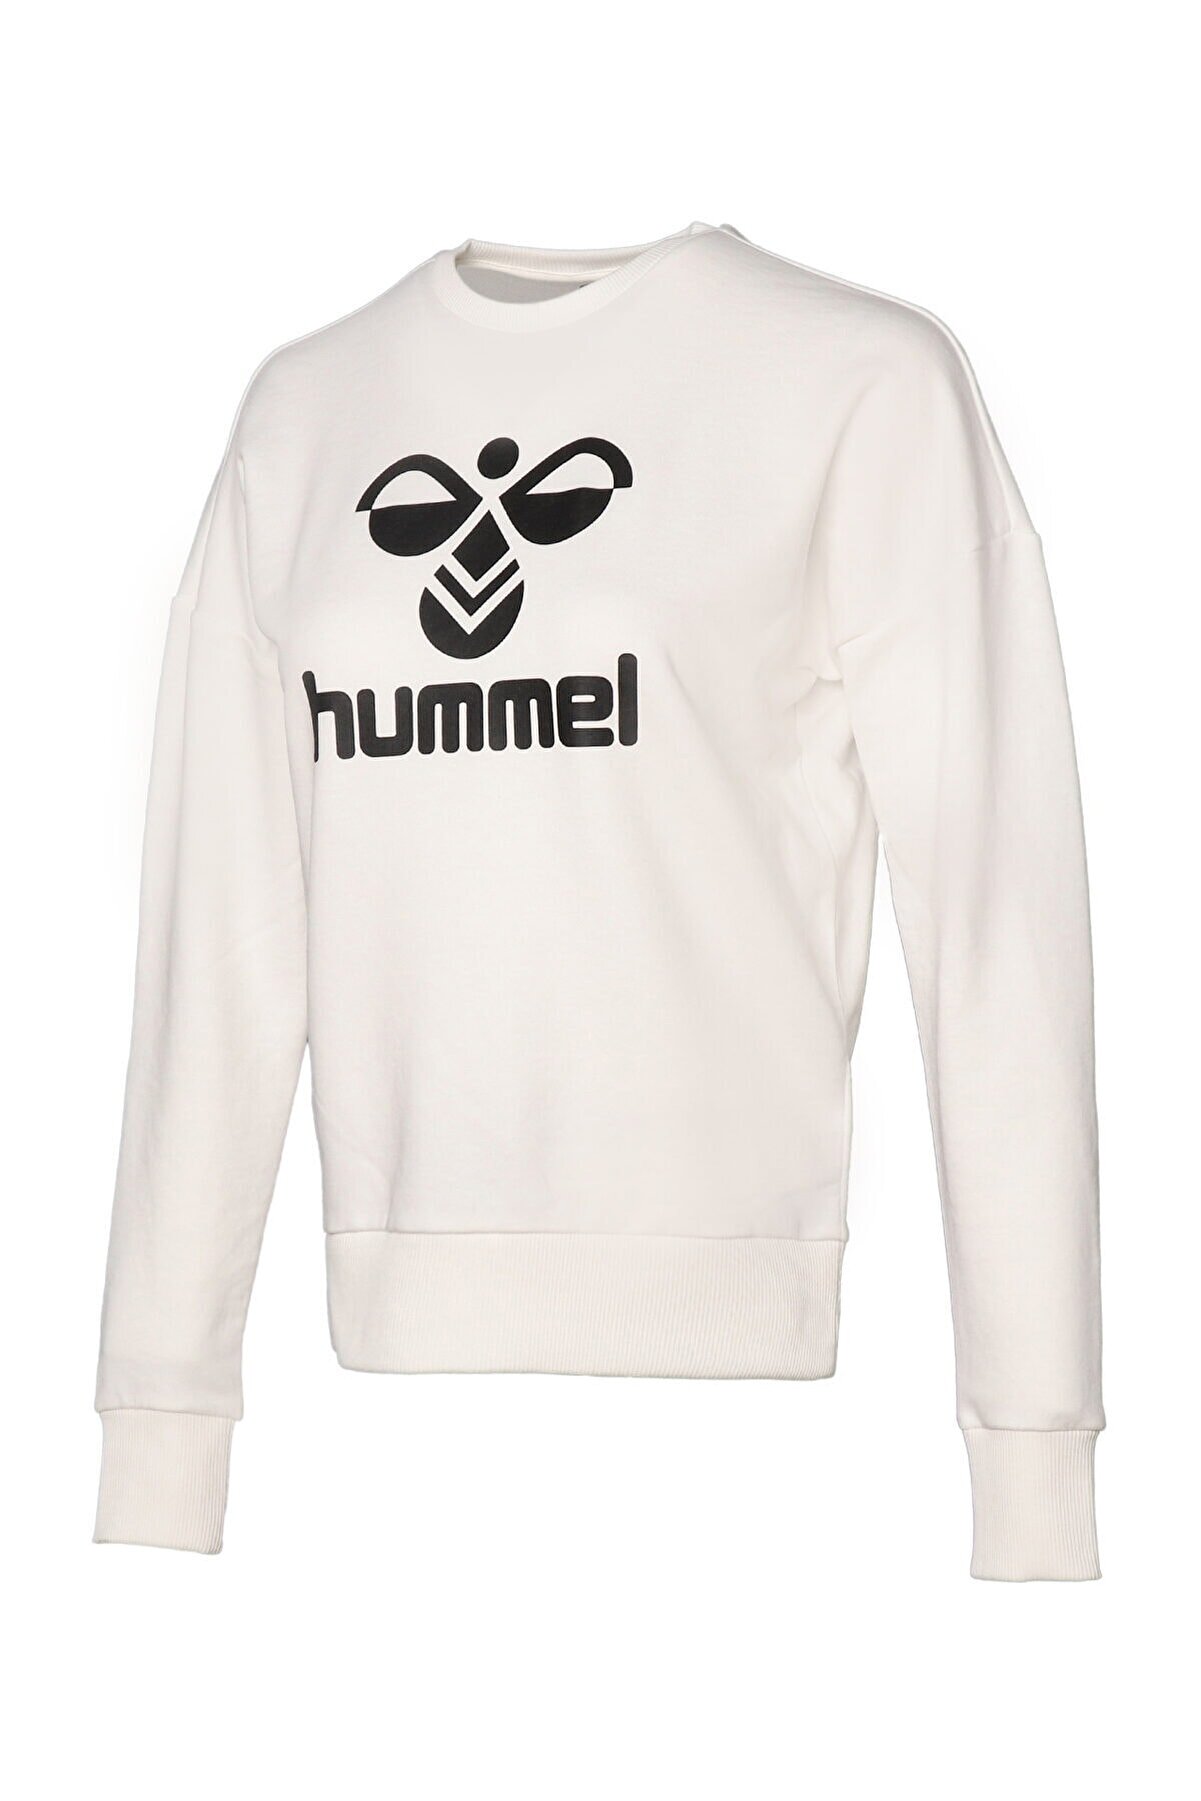 HUMMEL Helsinge Beyaz Kadın Sweatshirt